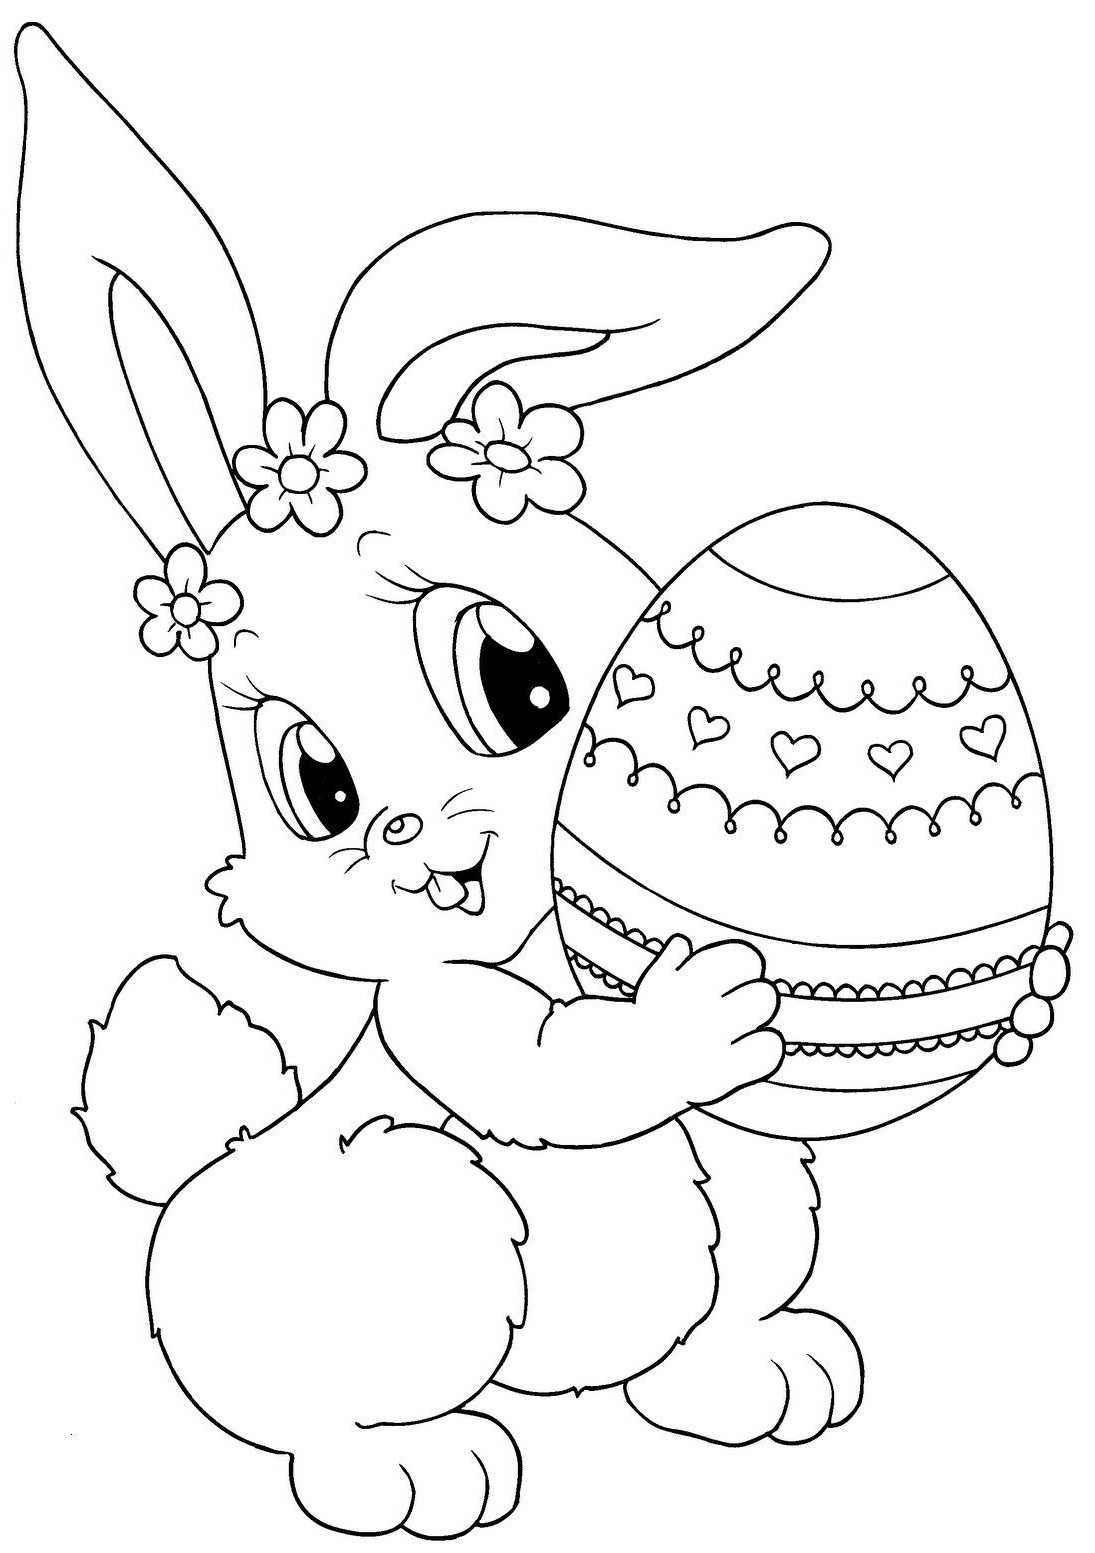 Printable Easter Colorings Free Online Blank Egg Cute | Coloring Pages - Easter Color Pages Free Printable